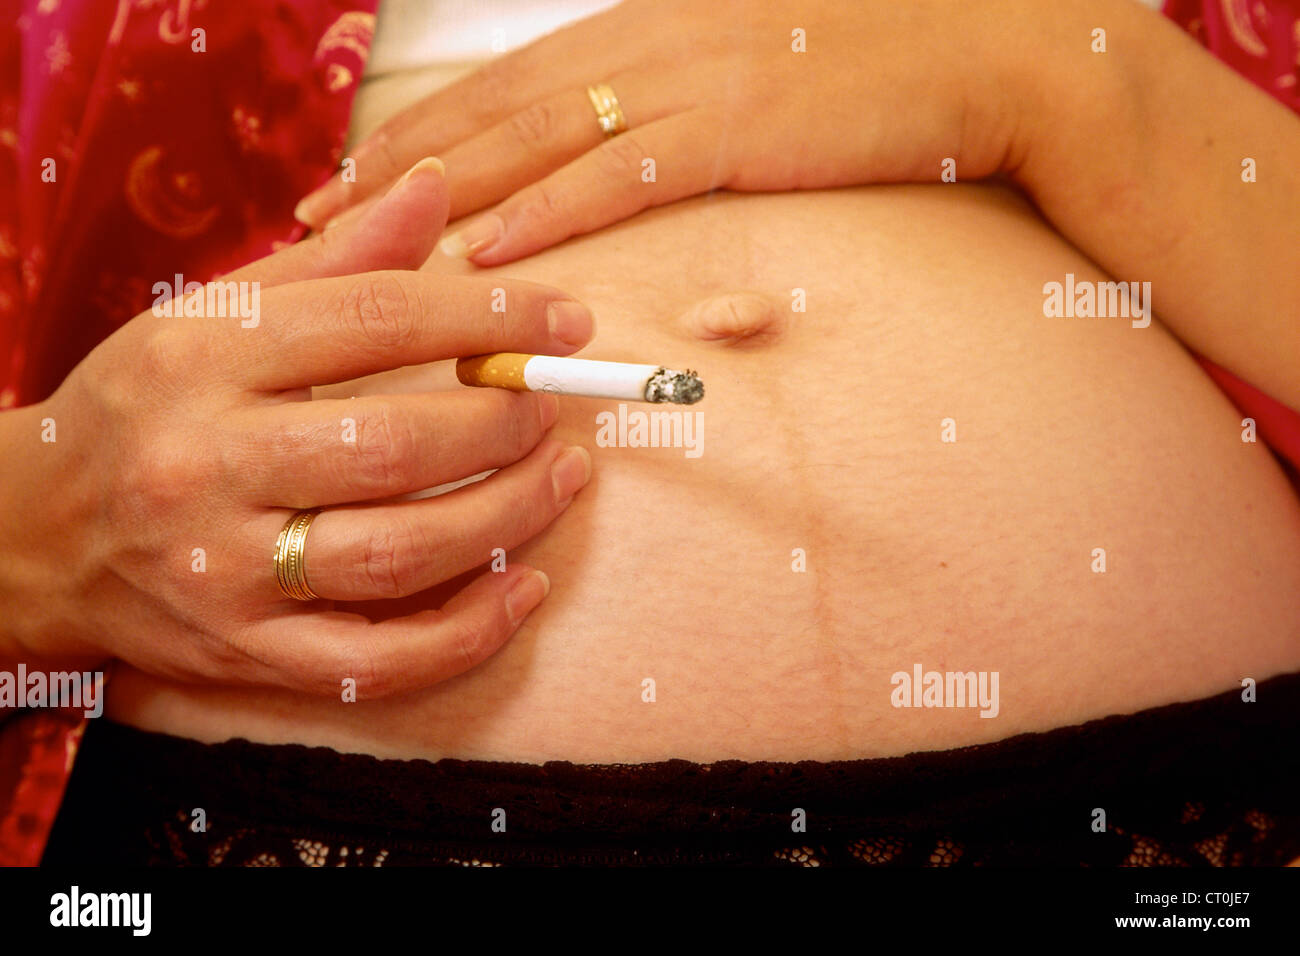 PREGNANT WOMAN SMOKING Stock Photo